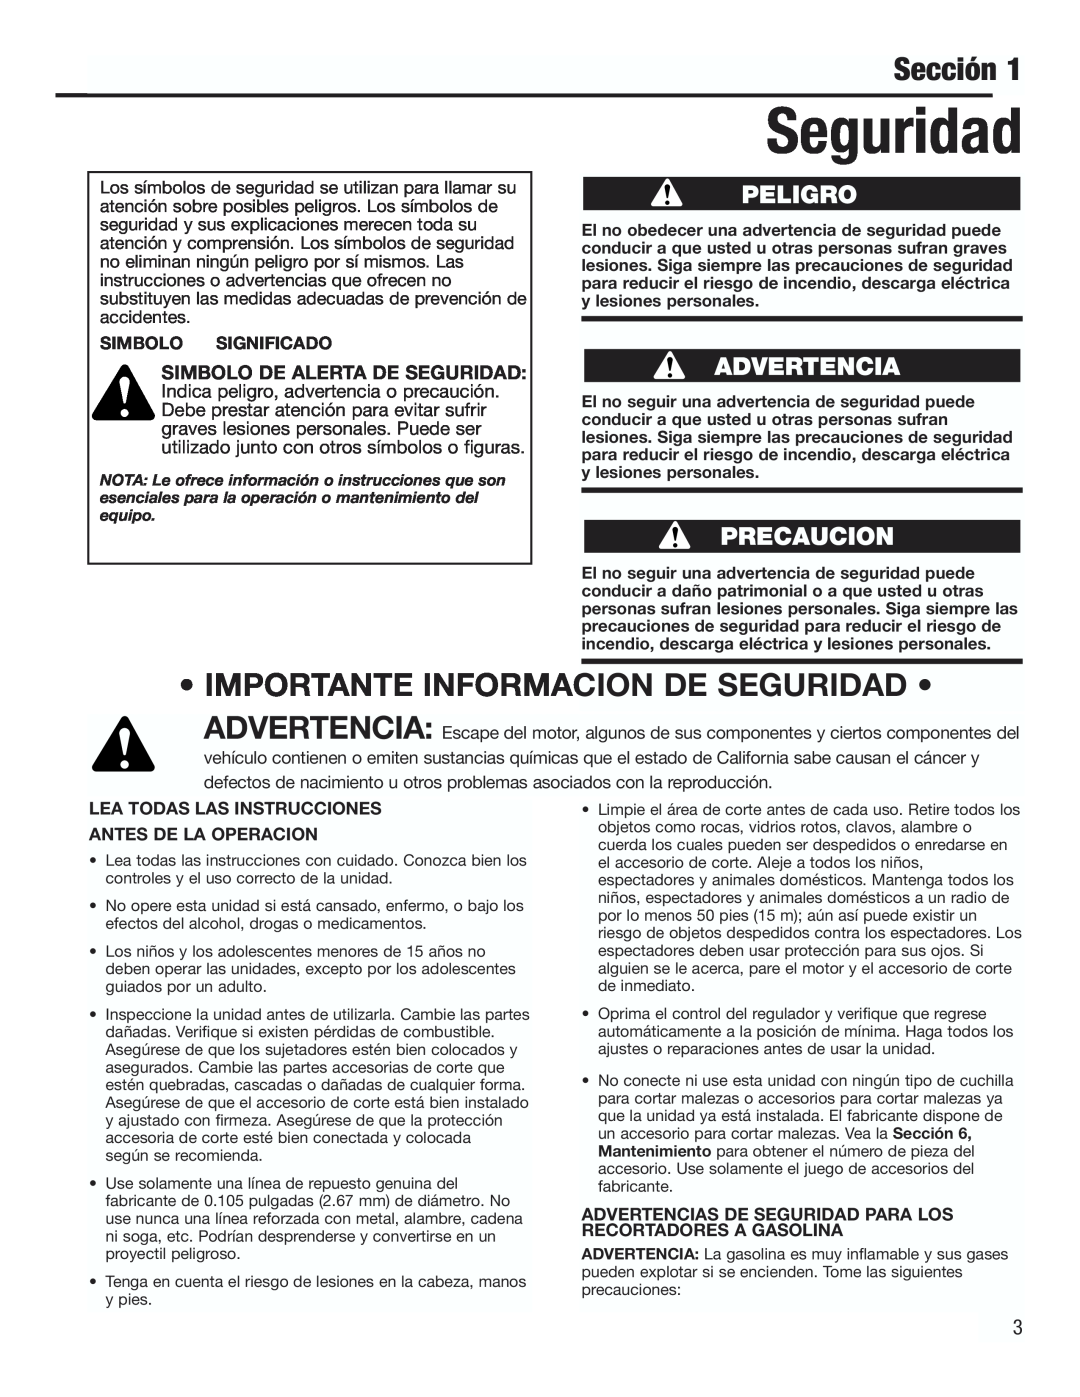 Cub Cadet CC3000 manual Sección, • Importante Informacion De Seguridad •, Simbolo Significado 